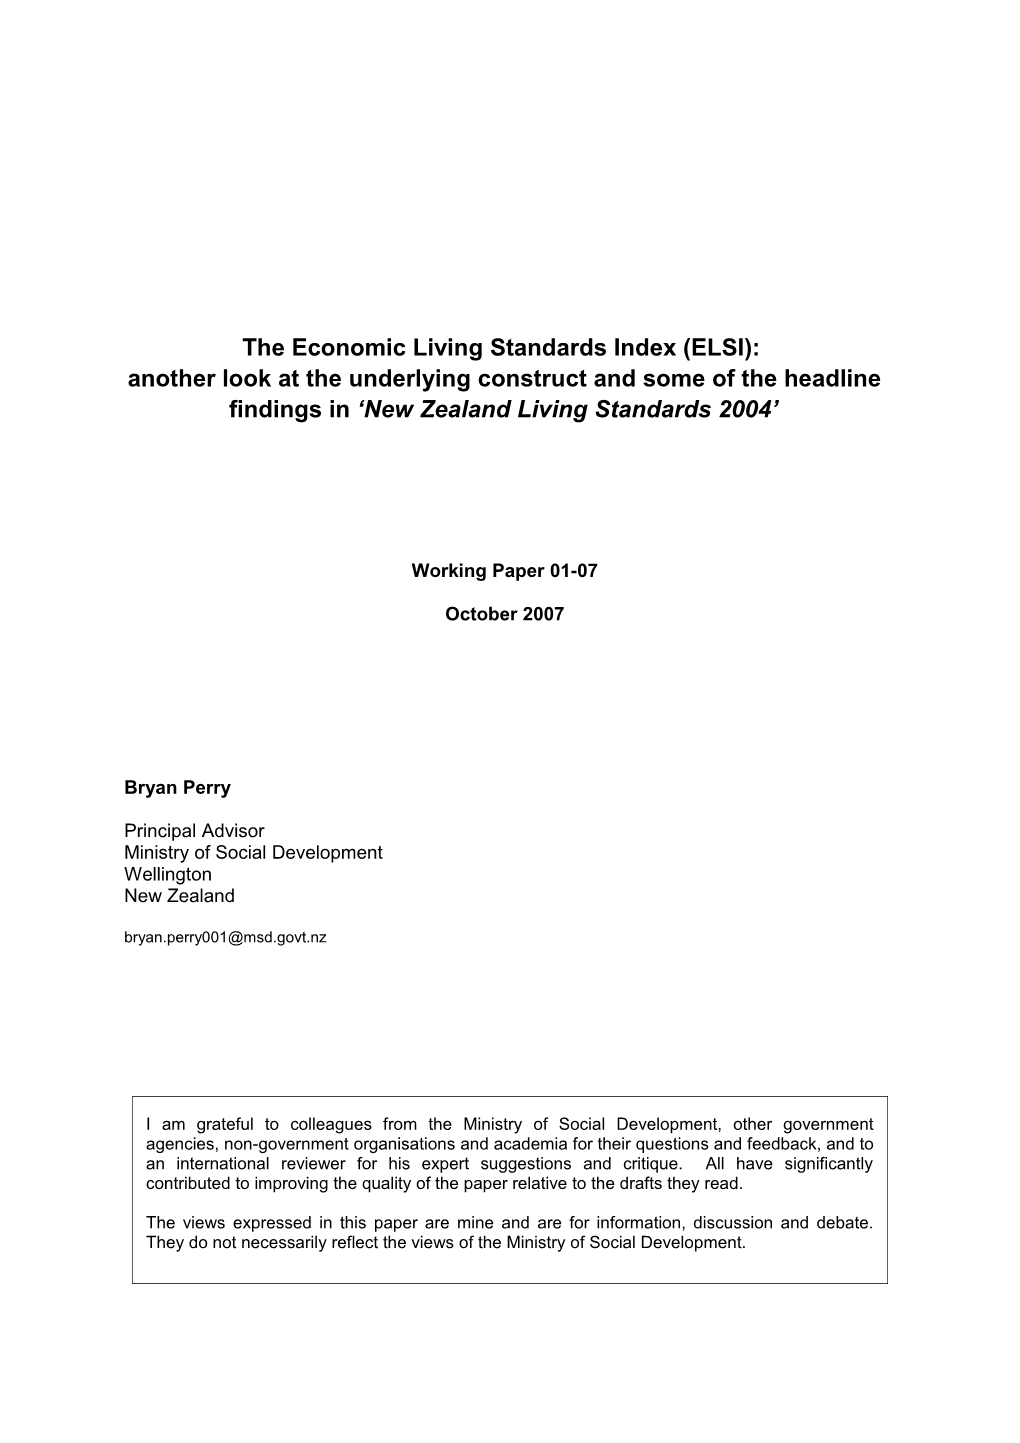 The Economic Living Standards Index (ELSI)